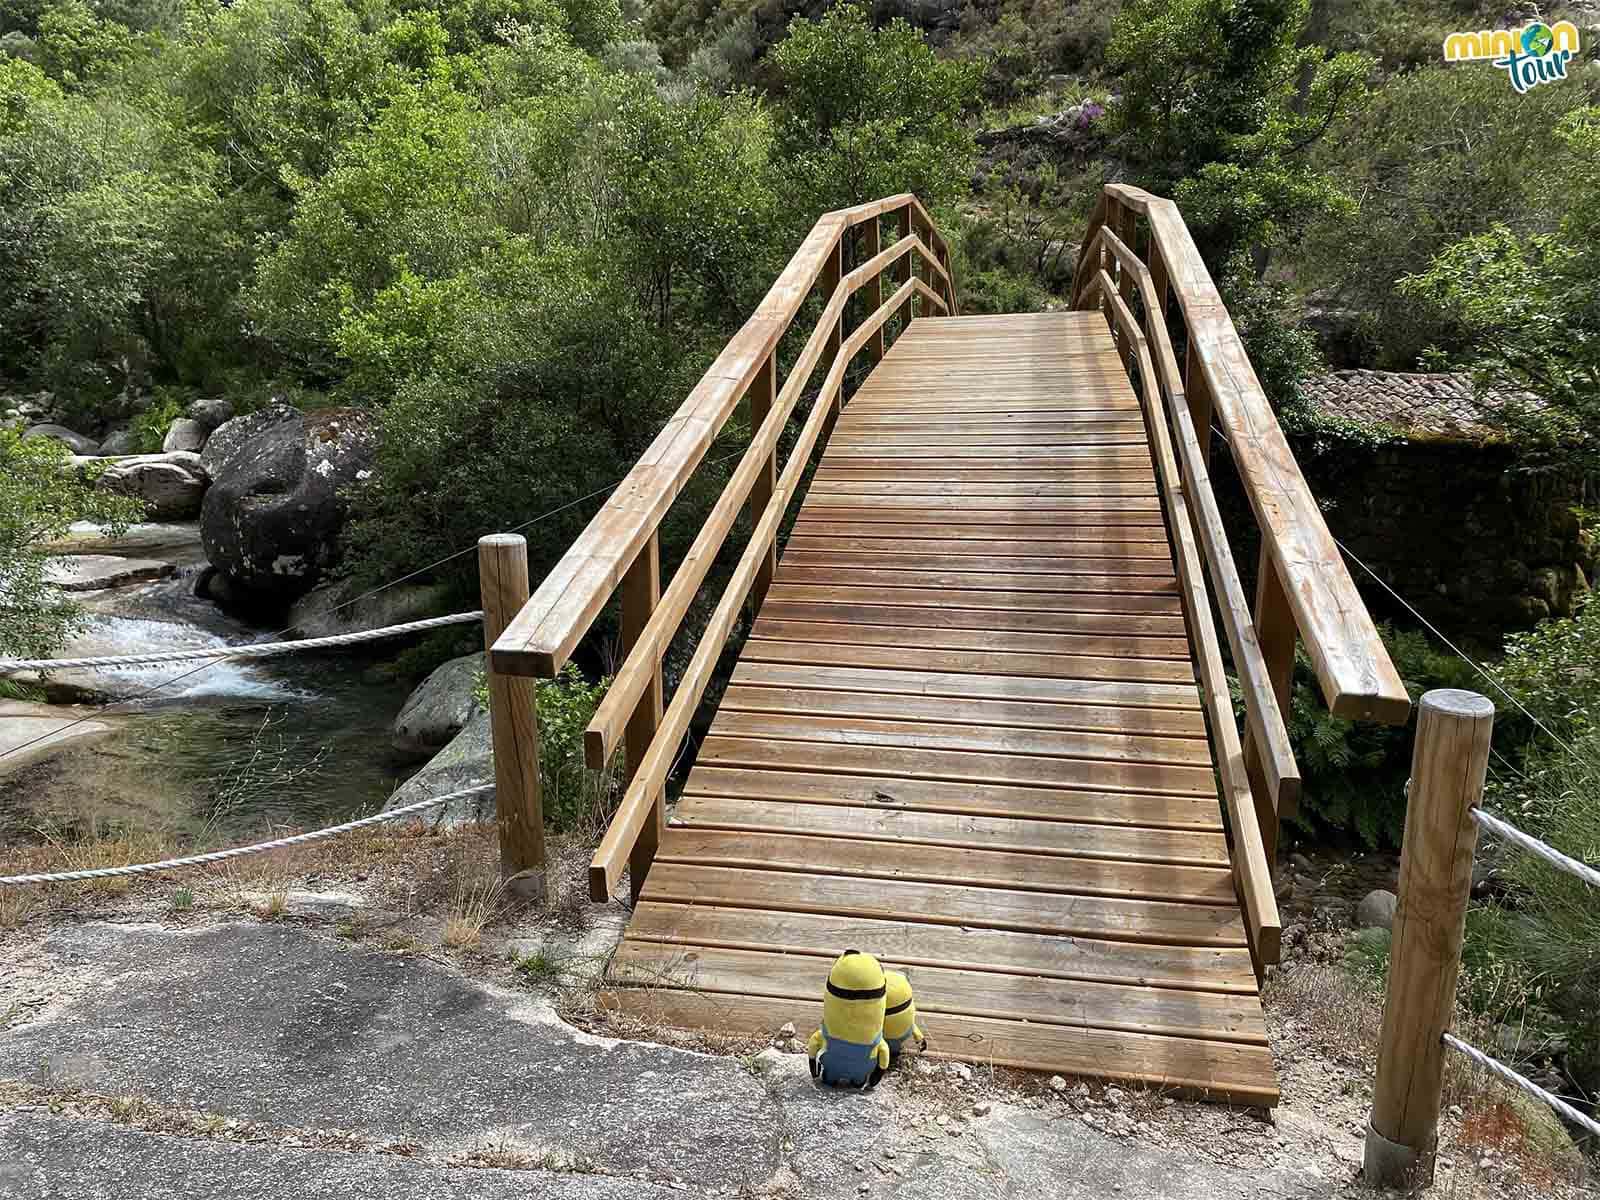 Vamos a cruzar el puente de madera para llegar al otro lado del río